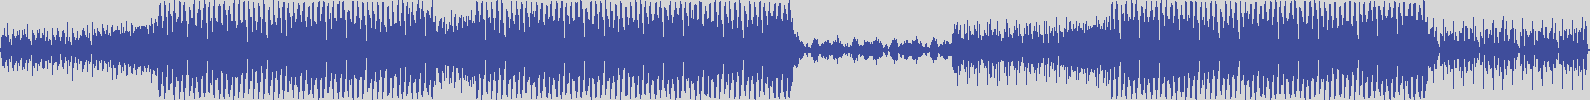 nf_boyz_records [NFY090] Robert Kajal - Dragon Breath [Ibiza Mix] audio wave form